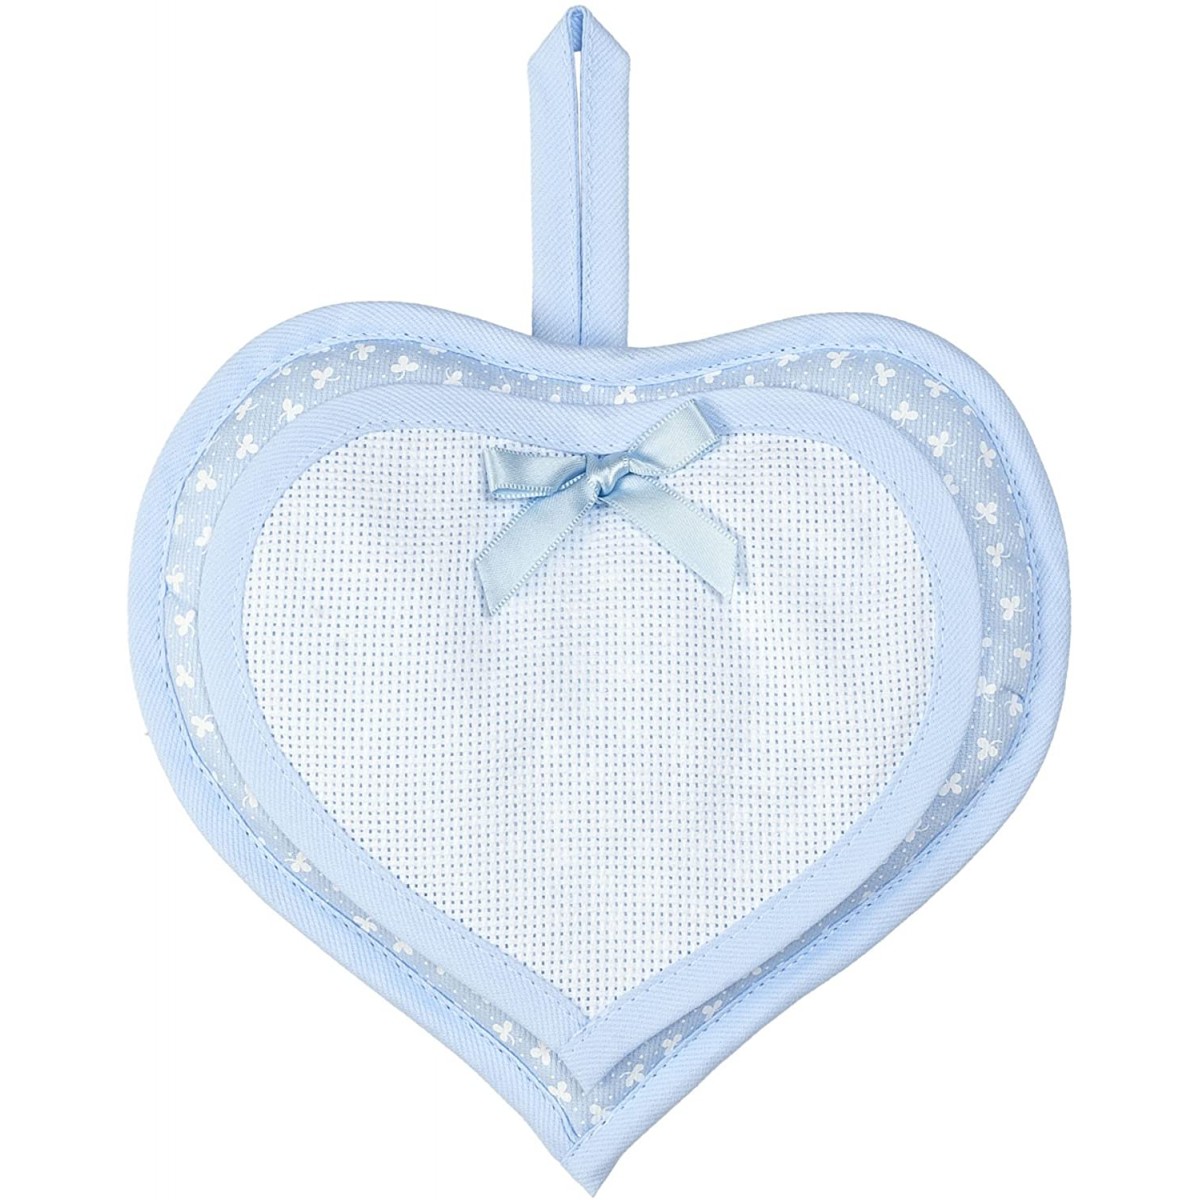 Fiocco nascita forma cuore, in cotone, bianco e azzurro, per maschietti